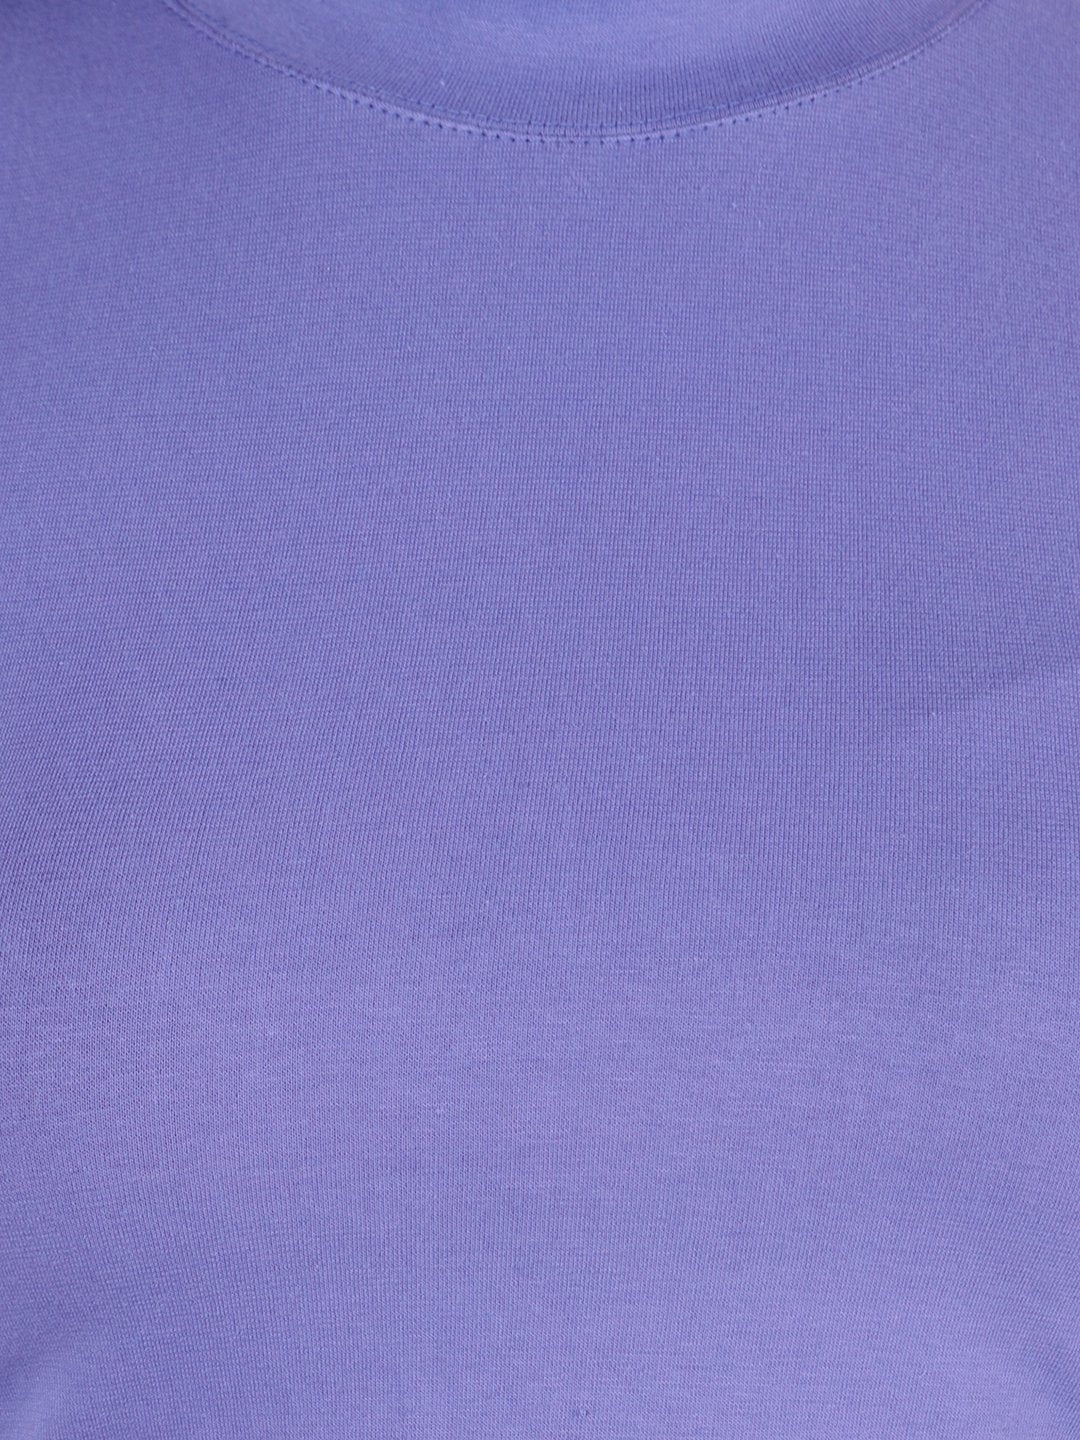 SCORPIUS Purple Hosiery Crop top